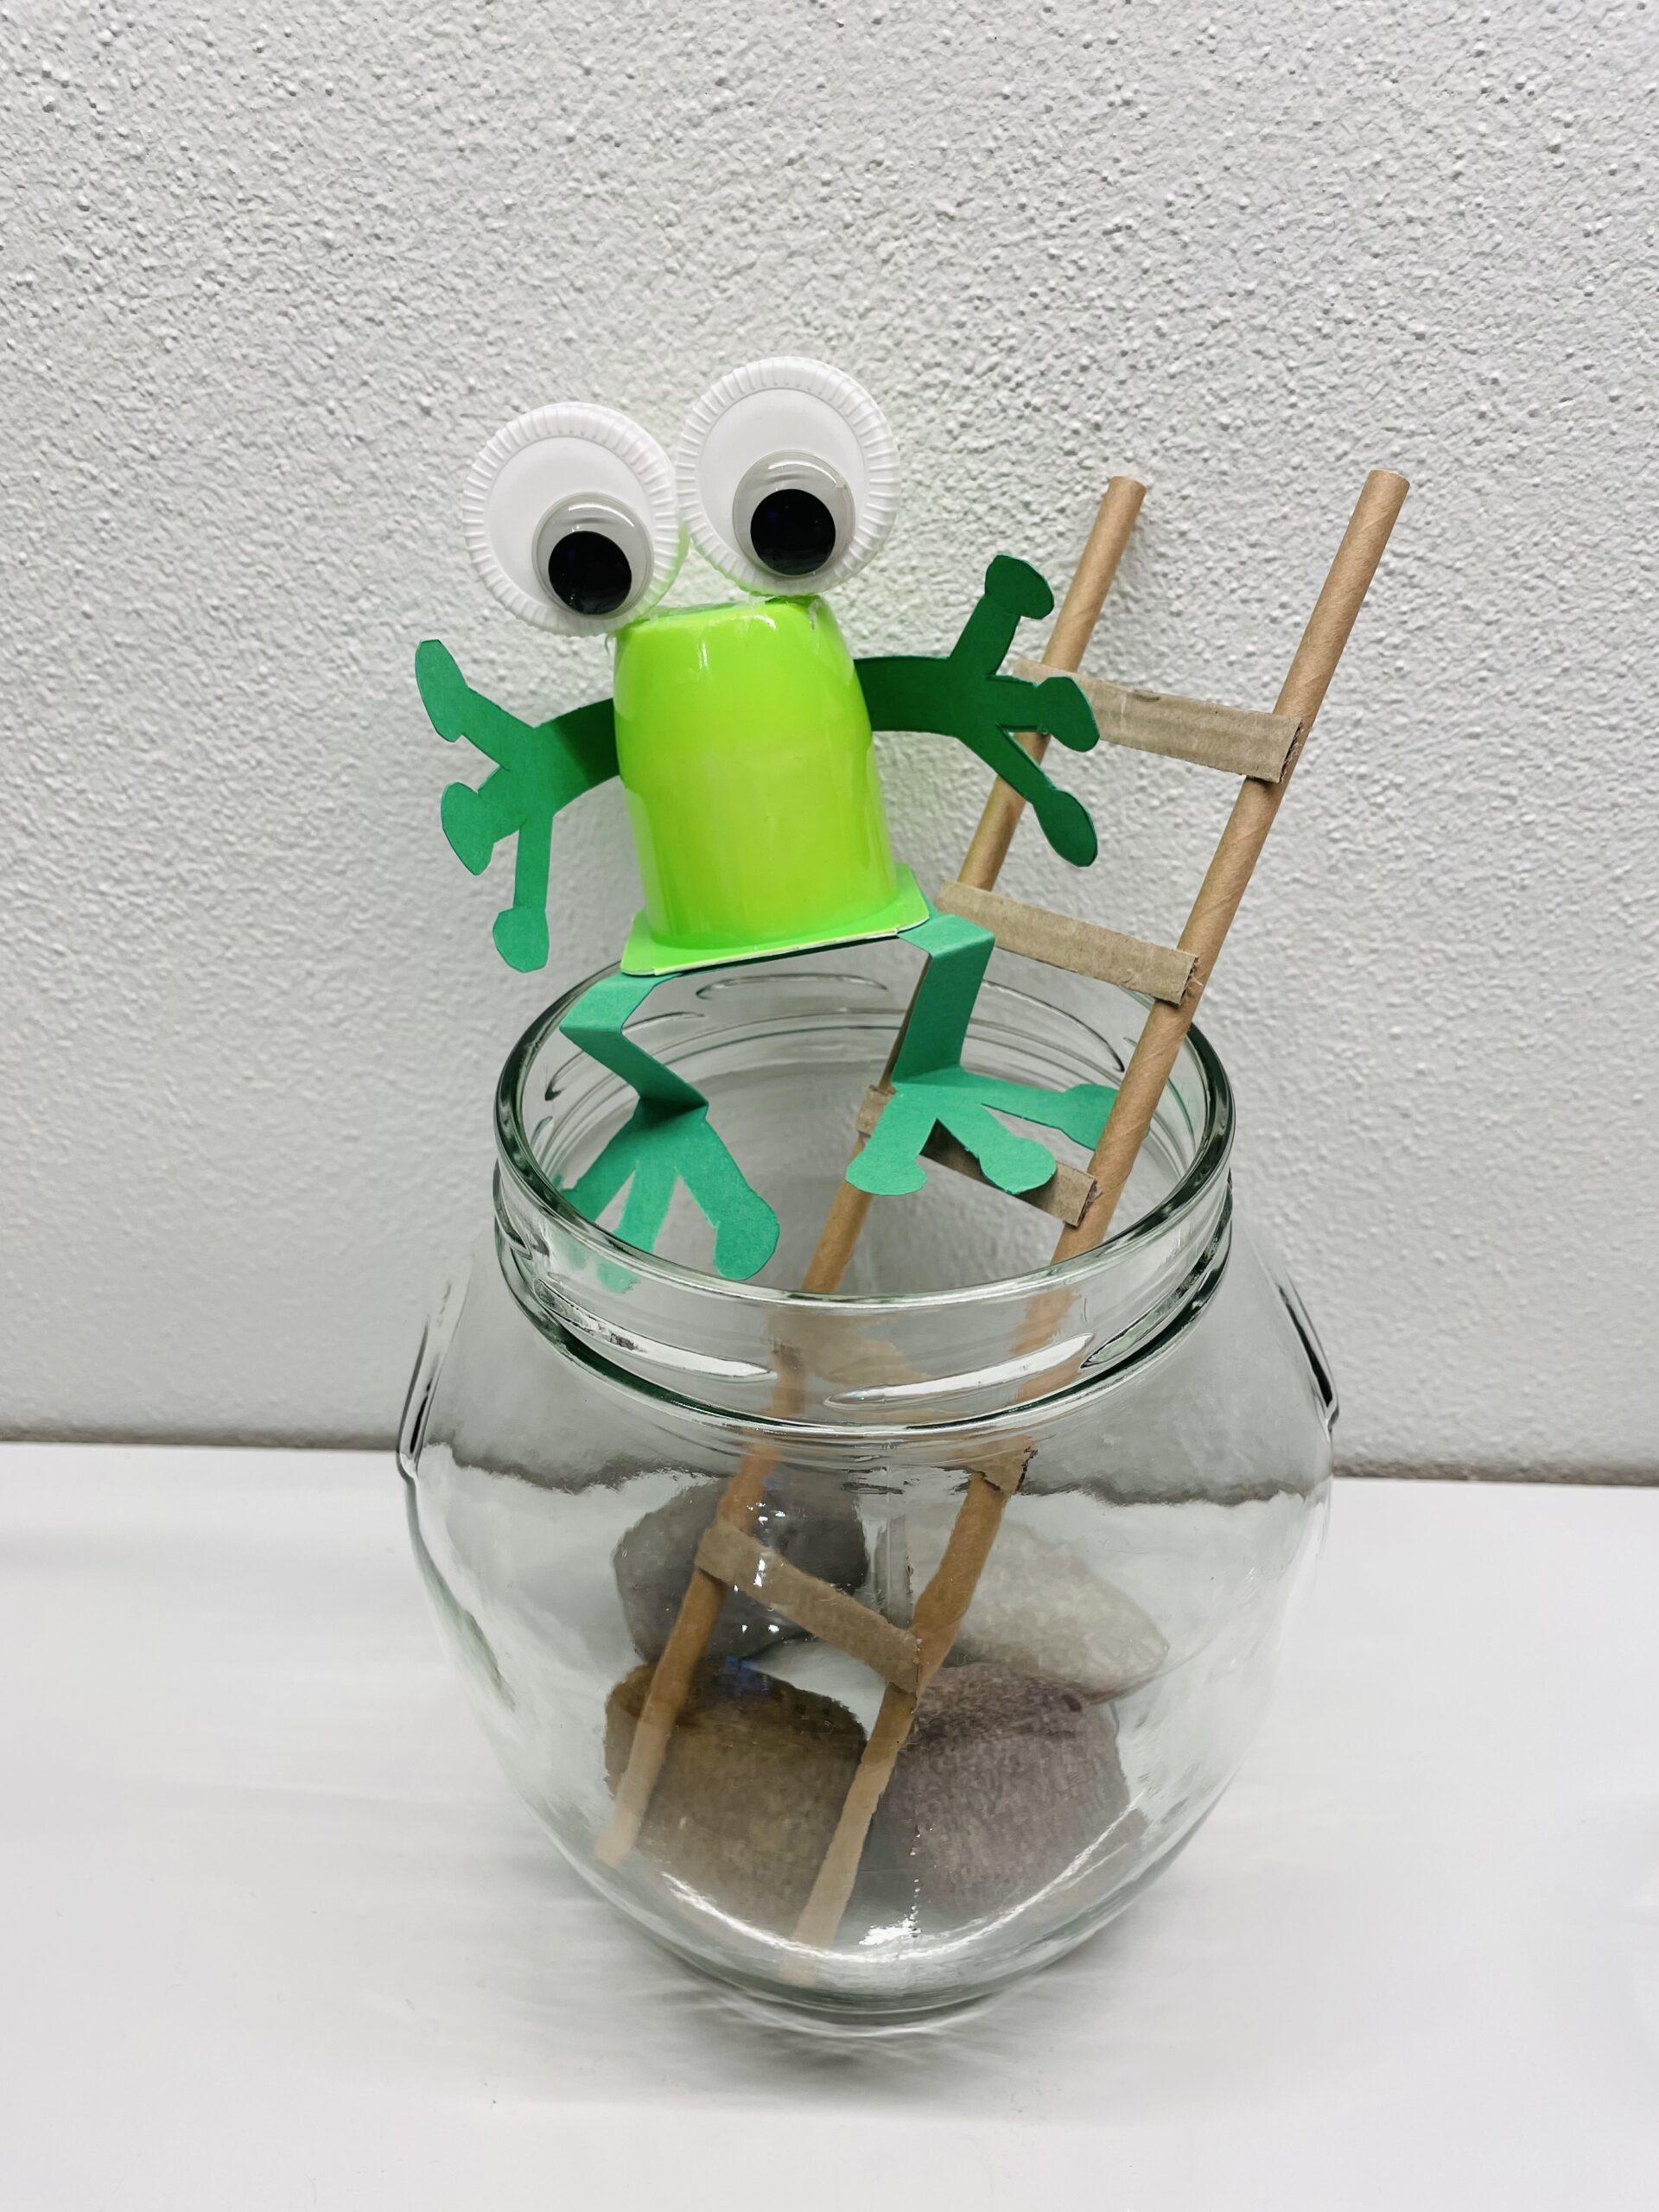 Bild zum Schritt 12 für das Bastel- und DIY-Abenteuer für Kinder: 'Setzt abschließend den Frosch auf den Glasrand.   Fertig...'